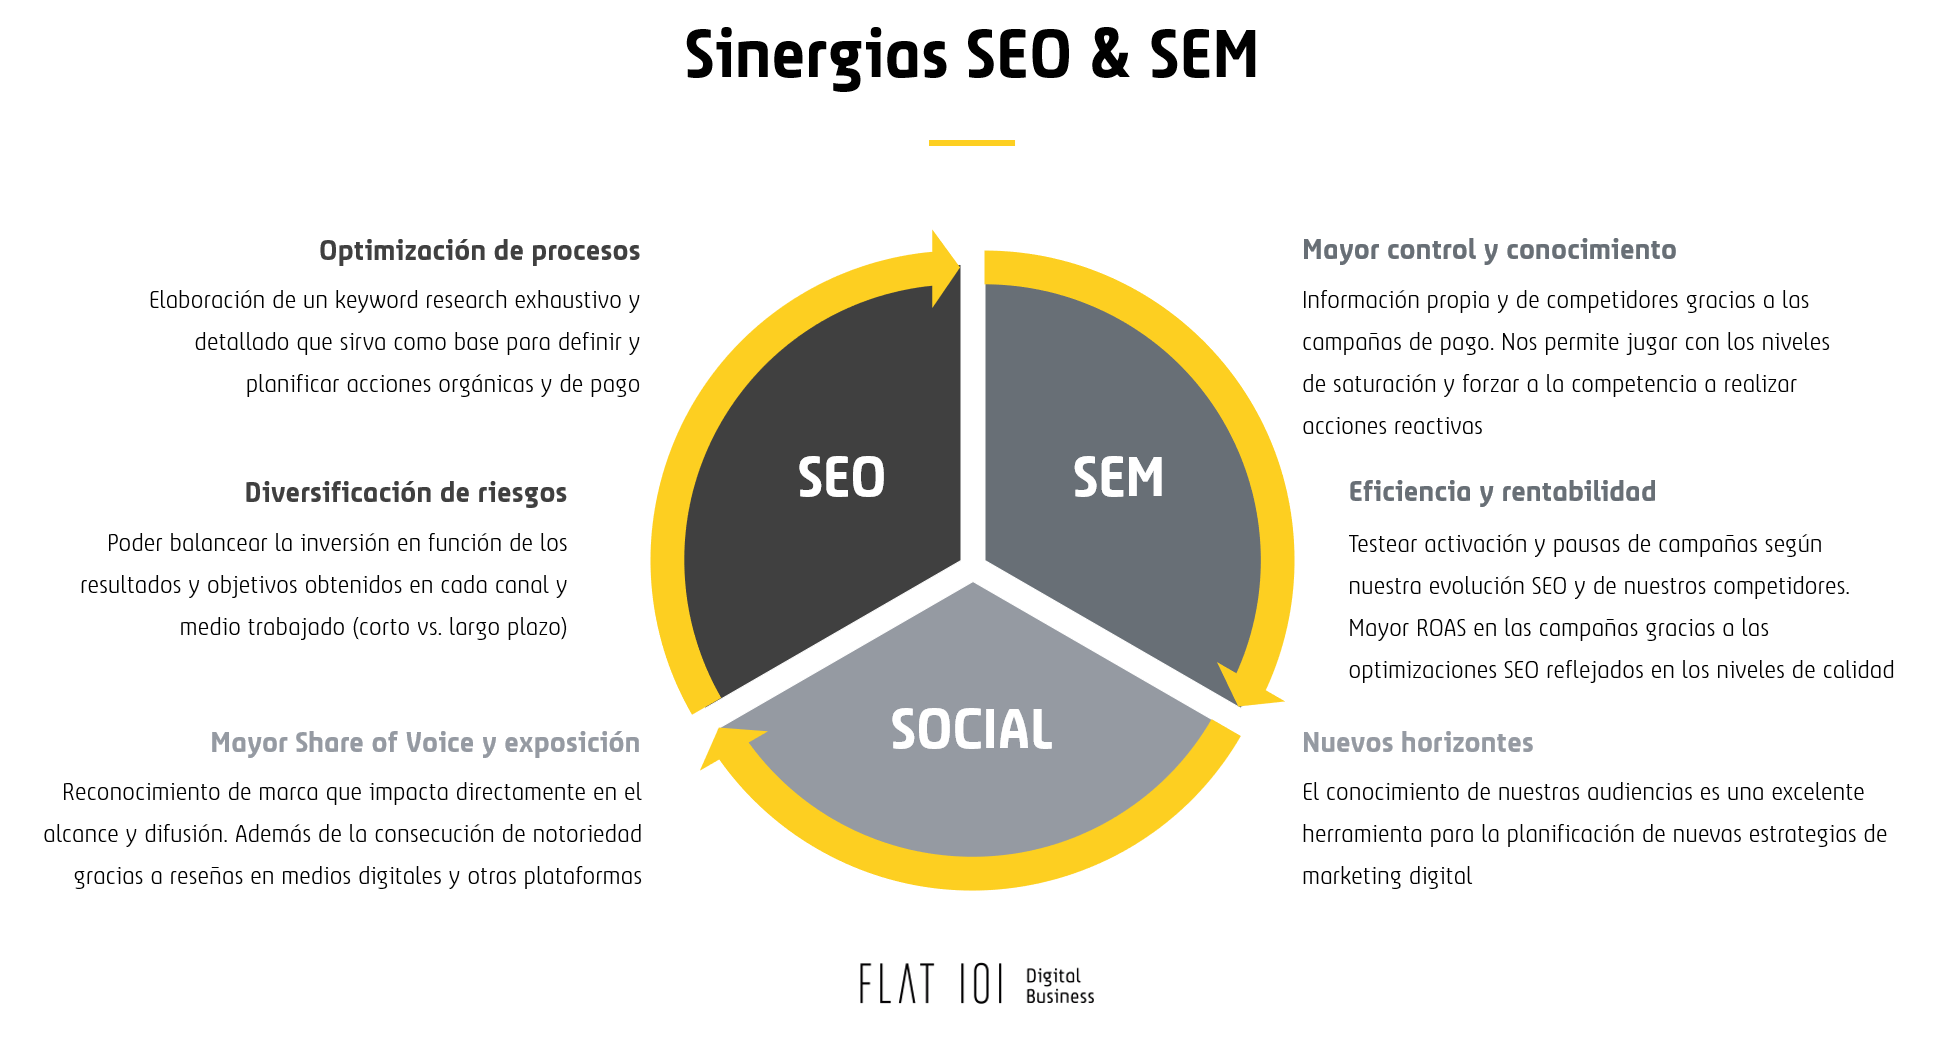 Infografía Sinergias SEO & SEM - Flat 101